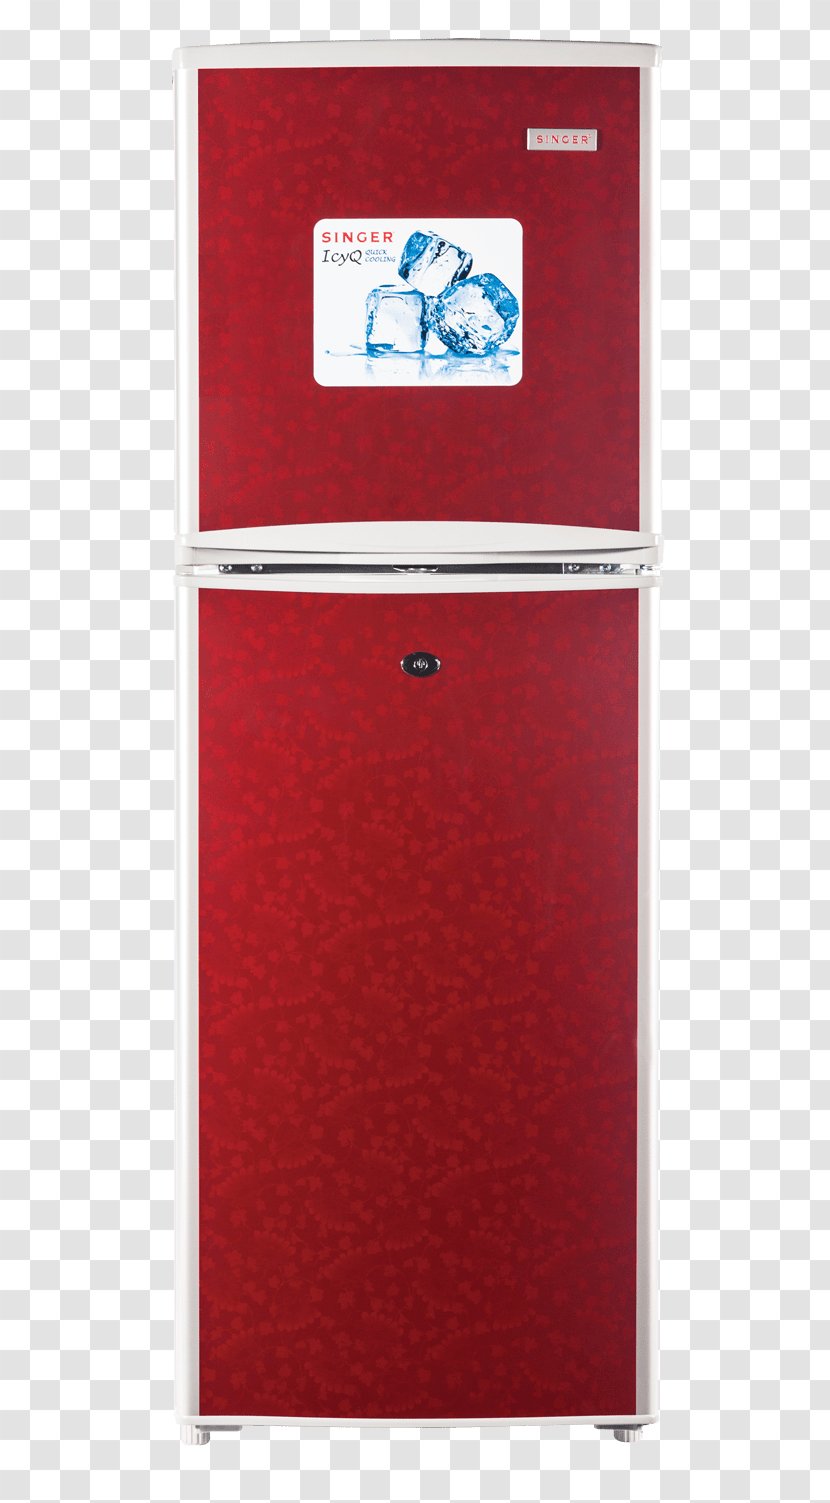 Freezers Refrigerator Home Appliance Pickaboo.com Transparent PNG